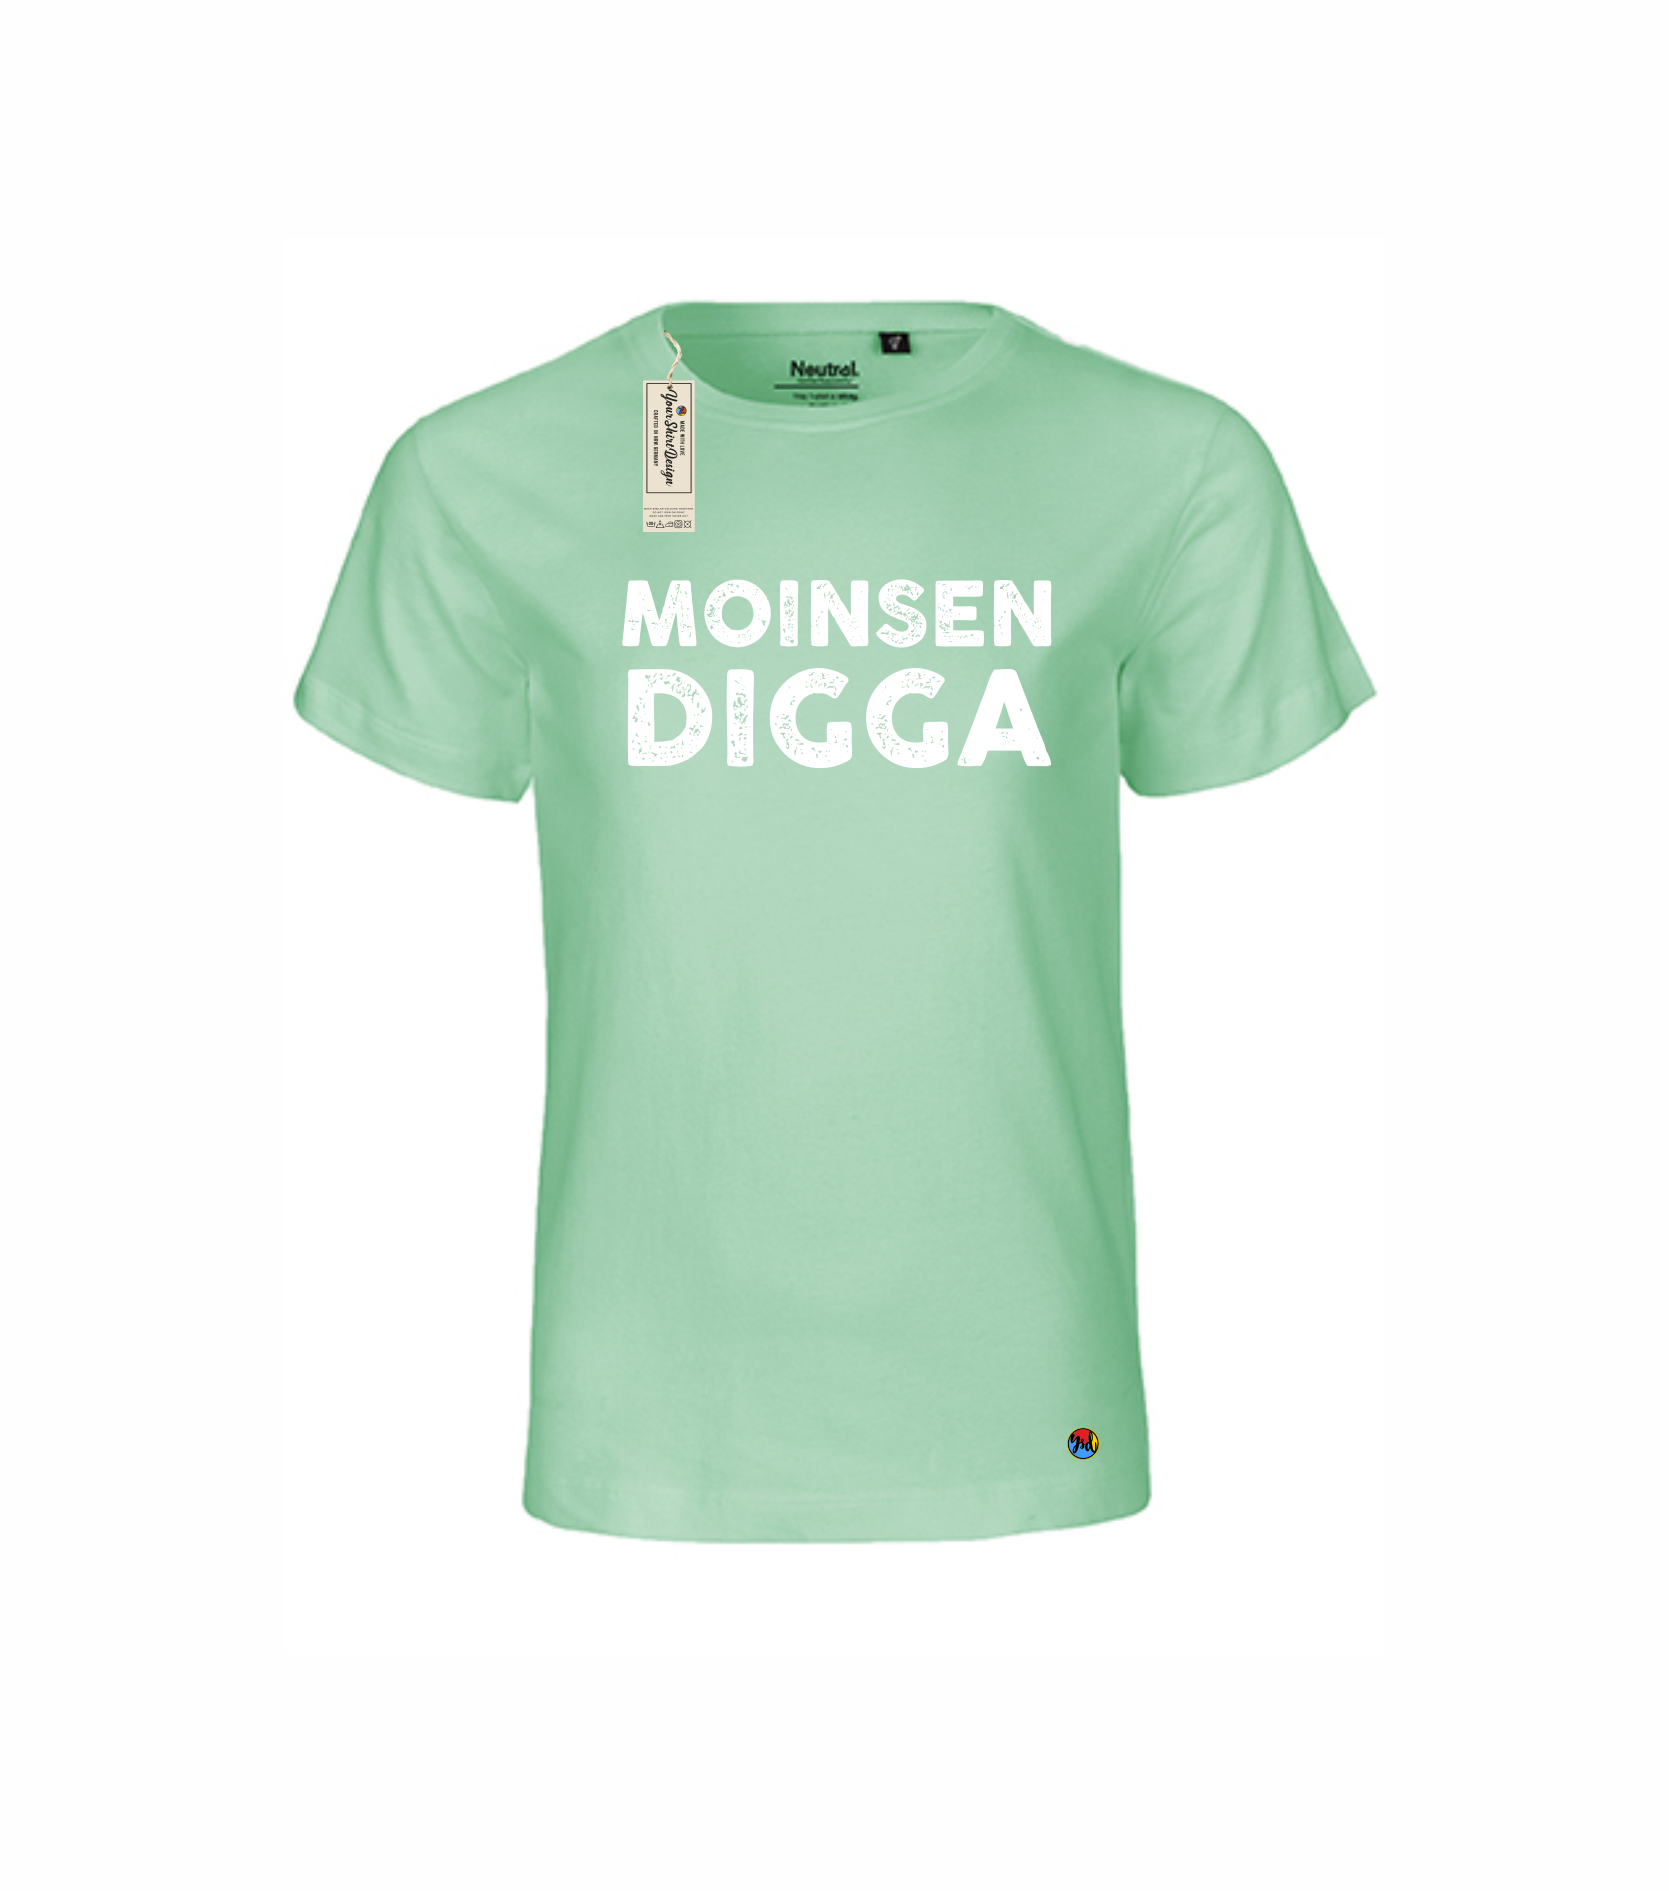 Your (verschiedene MOINSEN — Farben) T-Shirt Design DIGGA Kinder Shirt